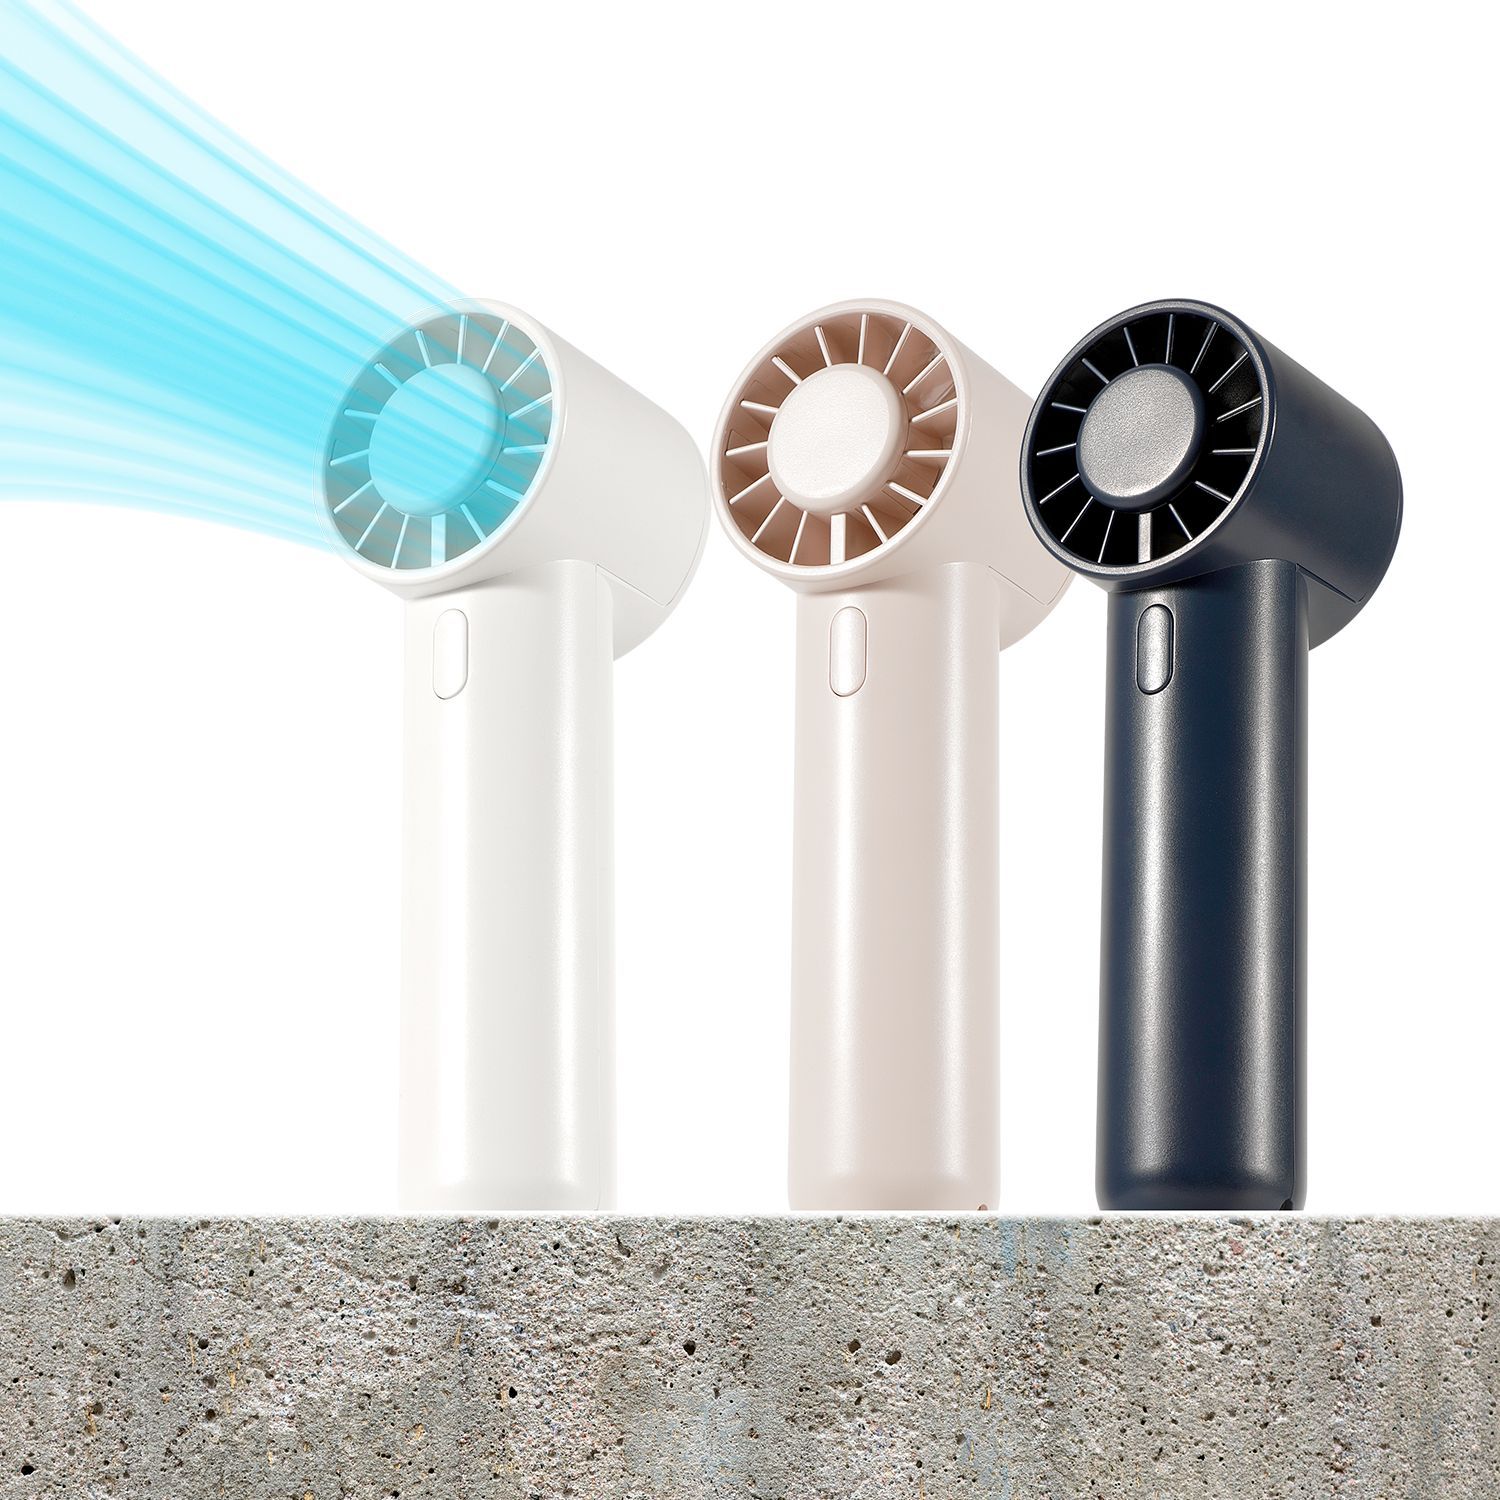 新款usb充電迷你手持小電風扇 創意禮品便攜式戶外夏天降溫風扇